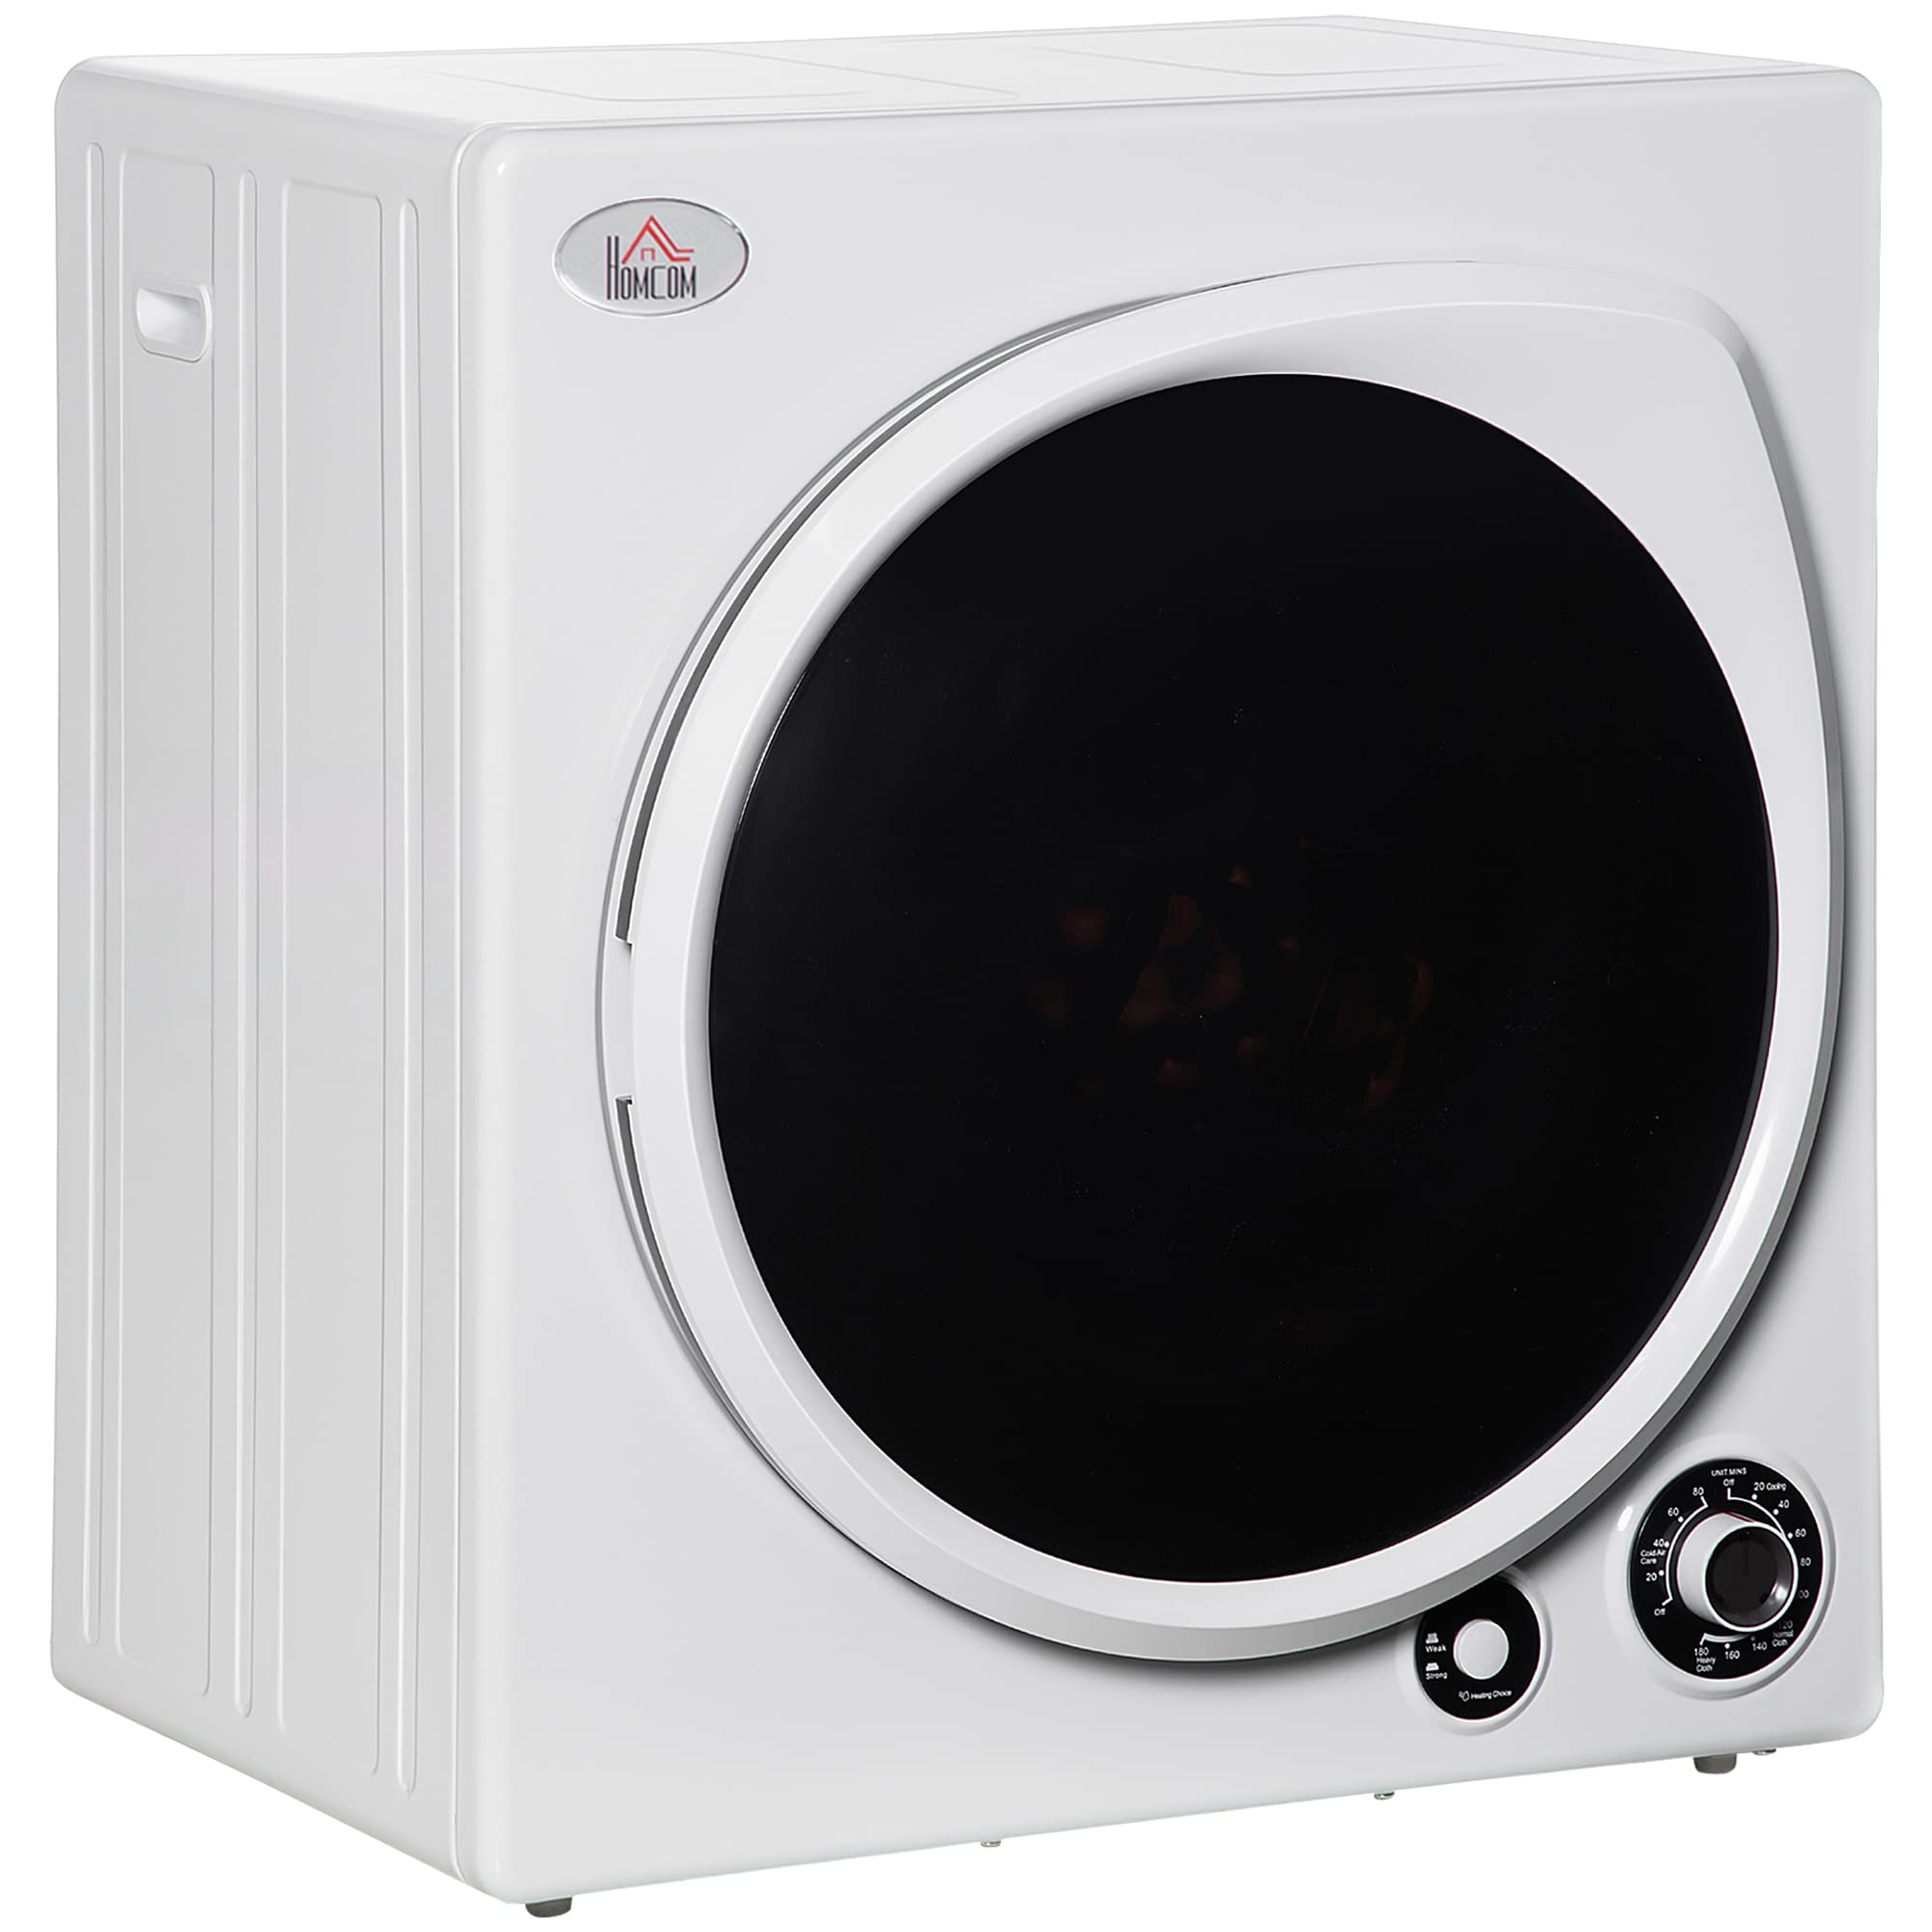 HomCom 自動乾燥機、1350W 3.22 Cu。フォート5つの乾燥モードとステンレス鋼浴槽を備えたポータ...